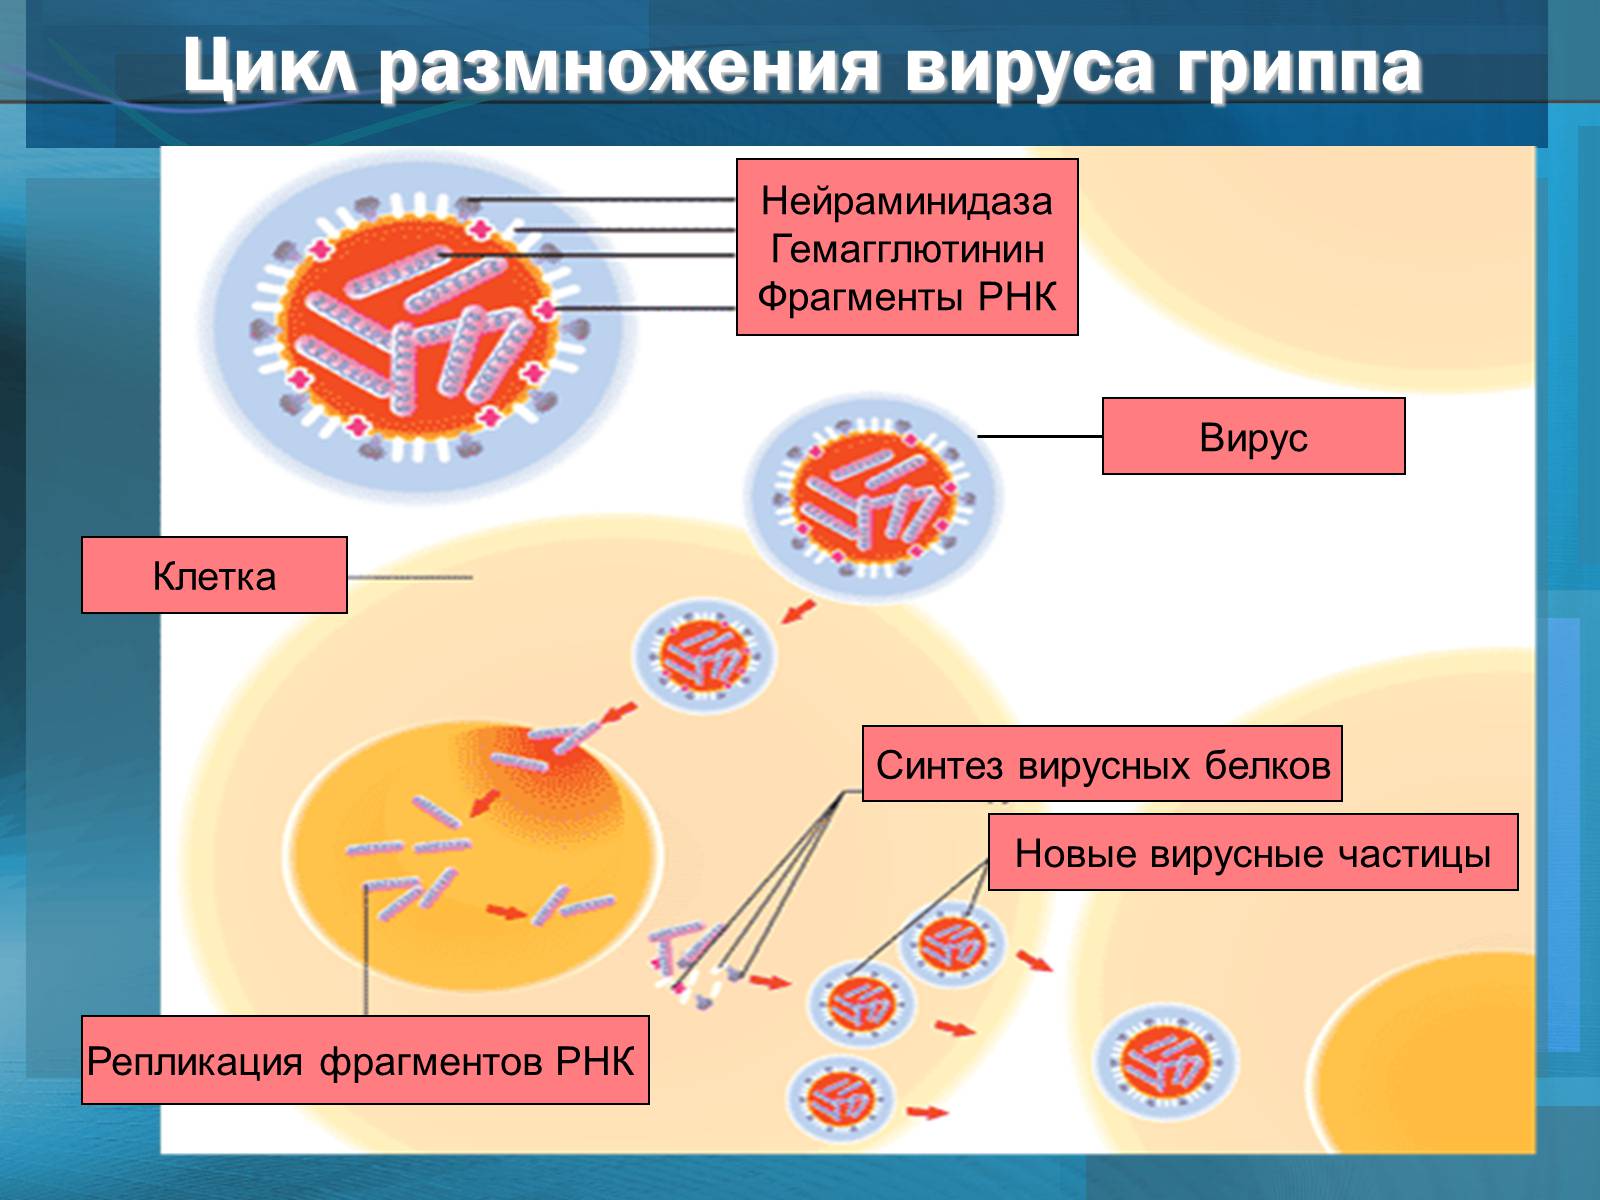 Действие вируса гриппа. Размножение вируса гриппа. Цикл репродукции вирусов. Цикл развития вируса гриппа. Схема репликации вируса гриппа.